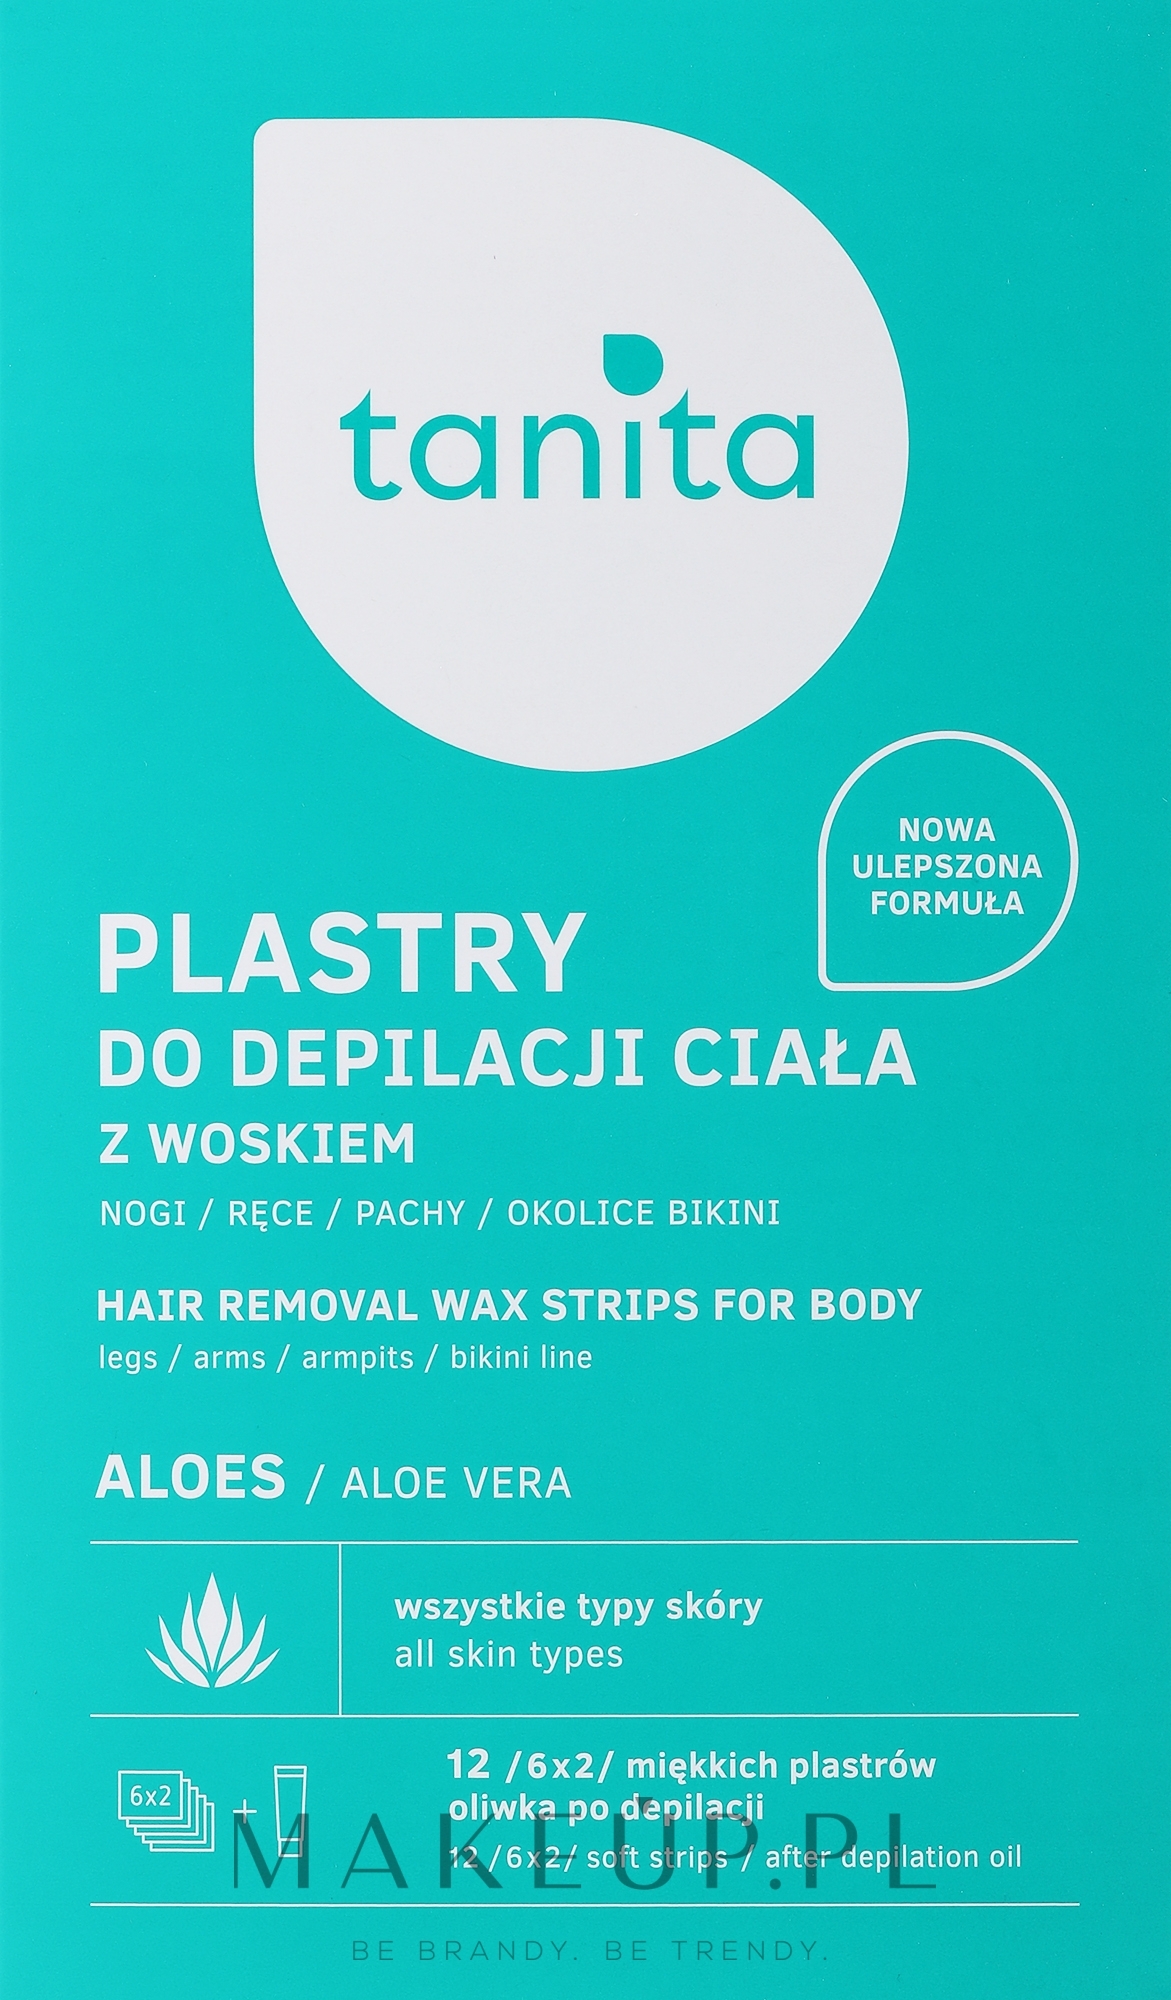 Aloesowe plastry z woskiem do depilacji ciała - Tanita — Zdjęcie 12 szt.